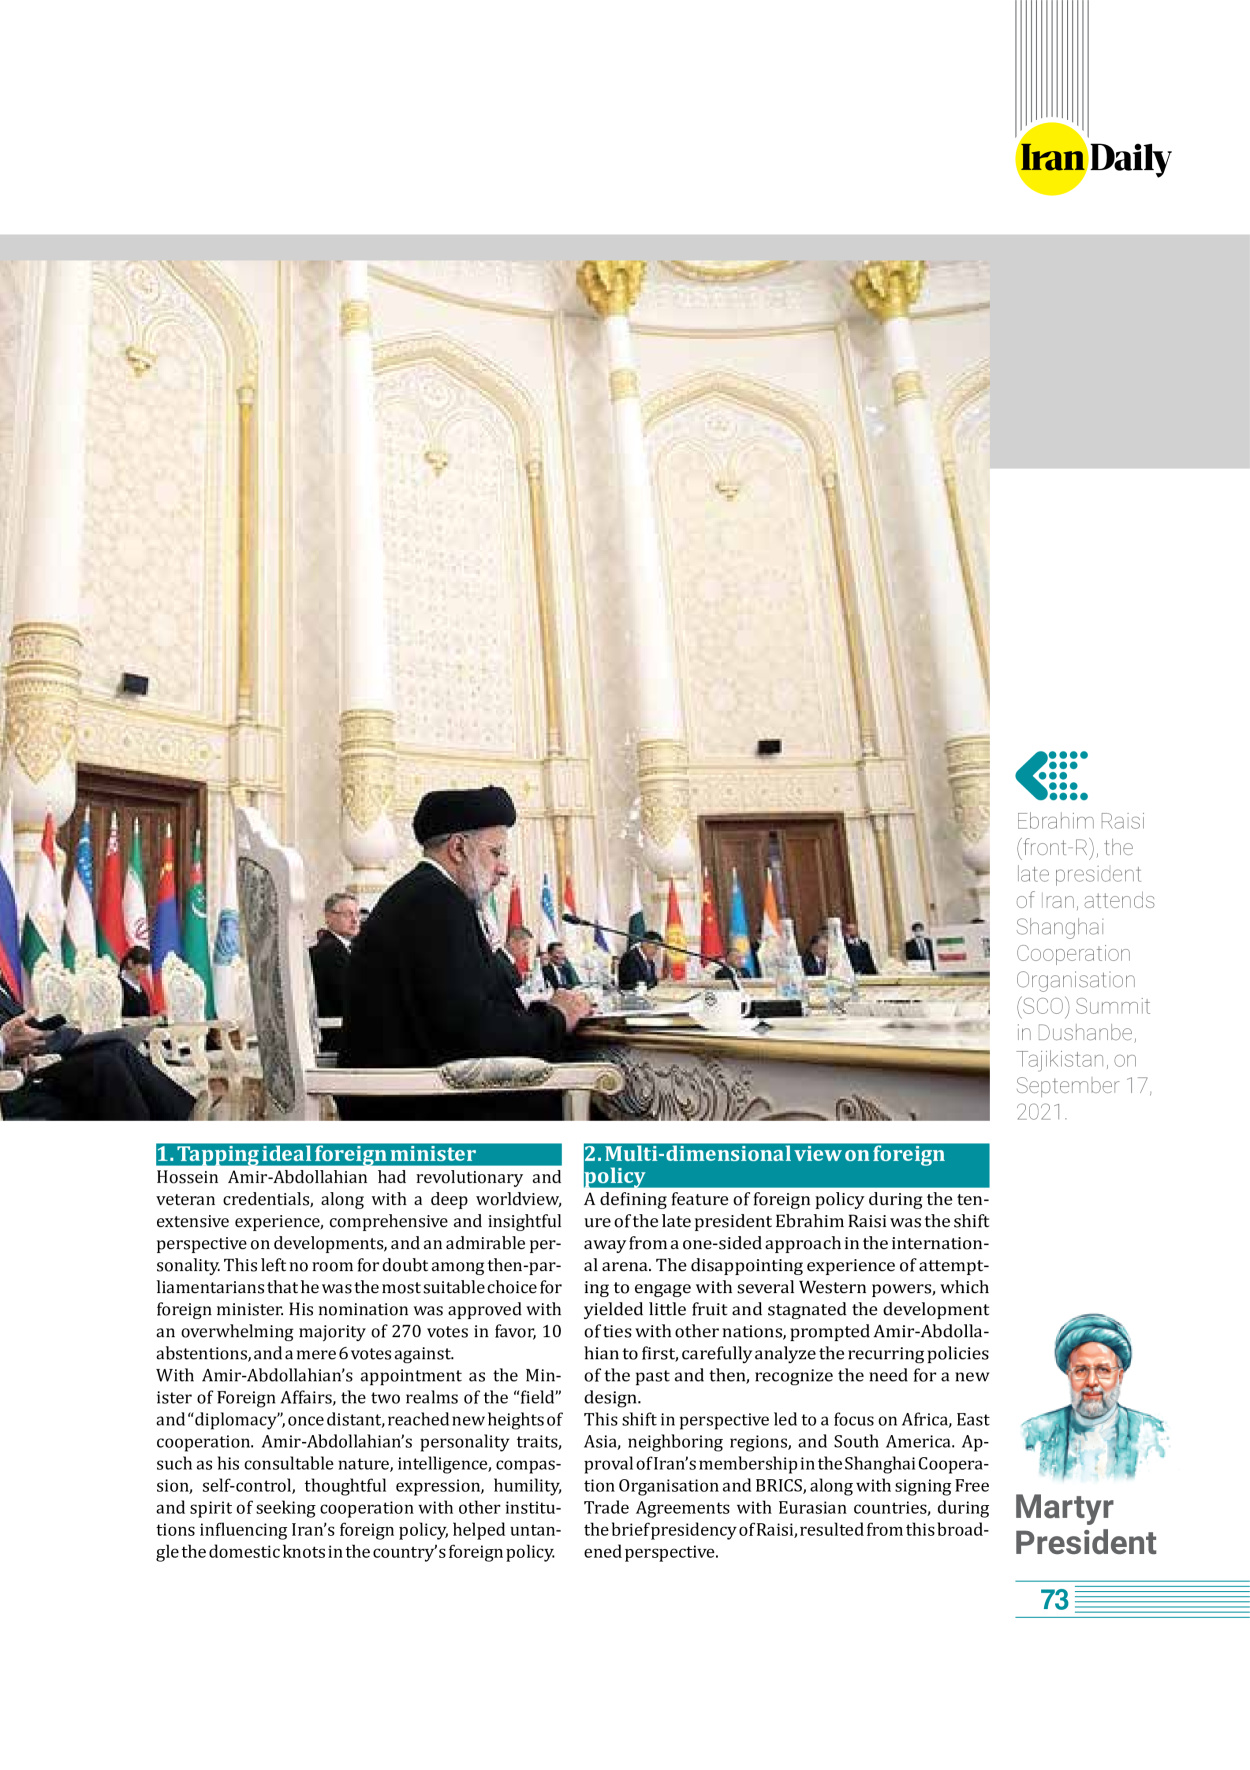 روزنامه ایران - ویژه نامه وِزه نامه چهلم شهید رییسی( انگلیسی) - ۱۷ تیر ۱۴۰۳ - صفحه ۷۳